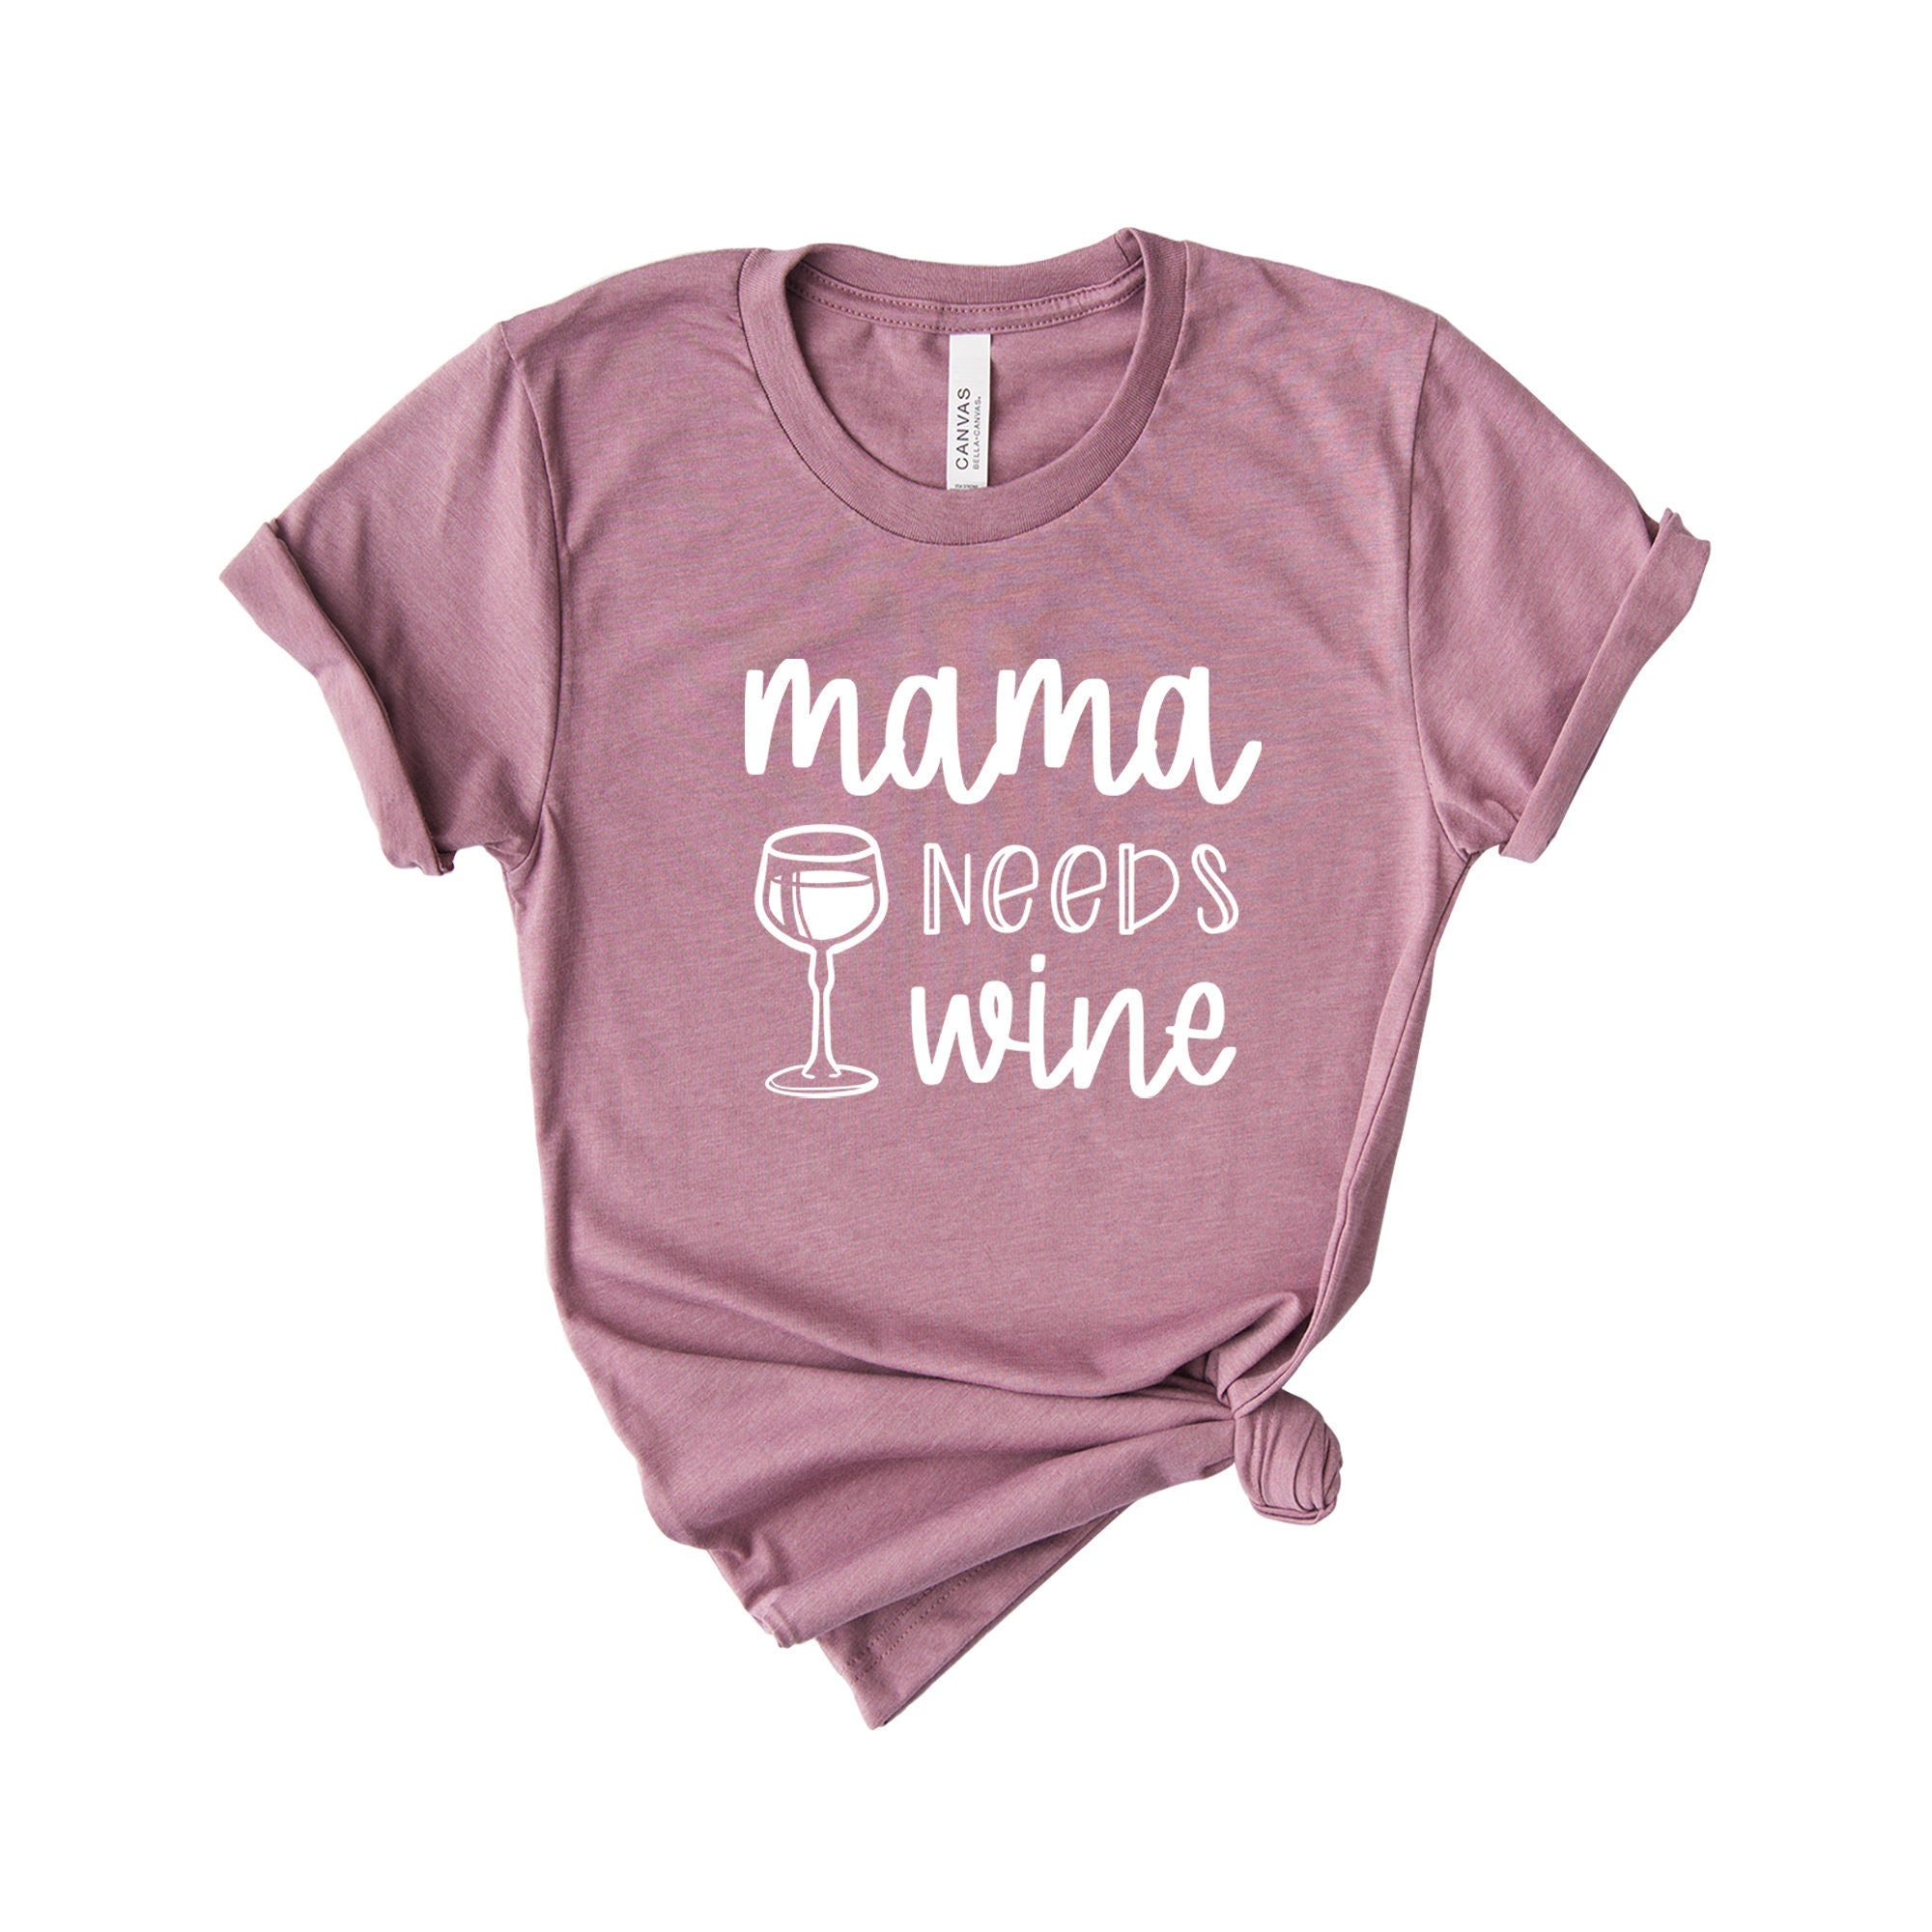 Mama Needs Coffee, Mom-life Shirt, Shirts for Moms, Trendy Mom T-Shirts, Cool Mom Shirts, Shirts for Moms